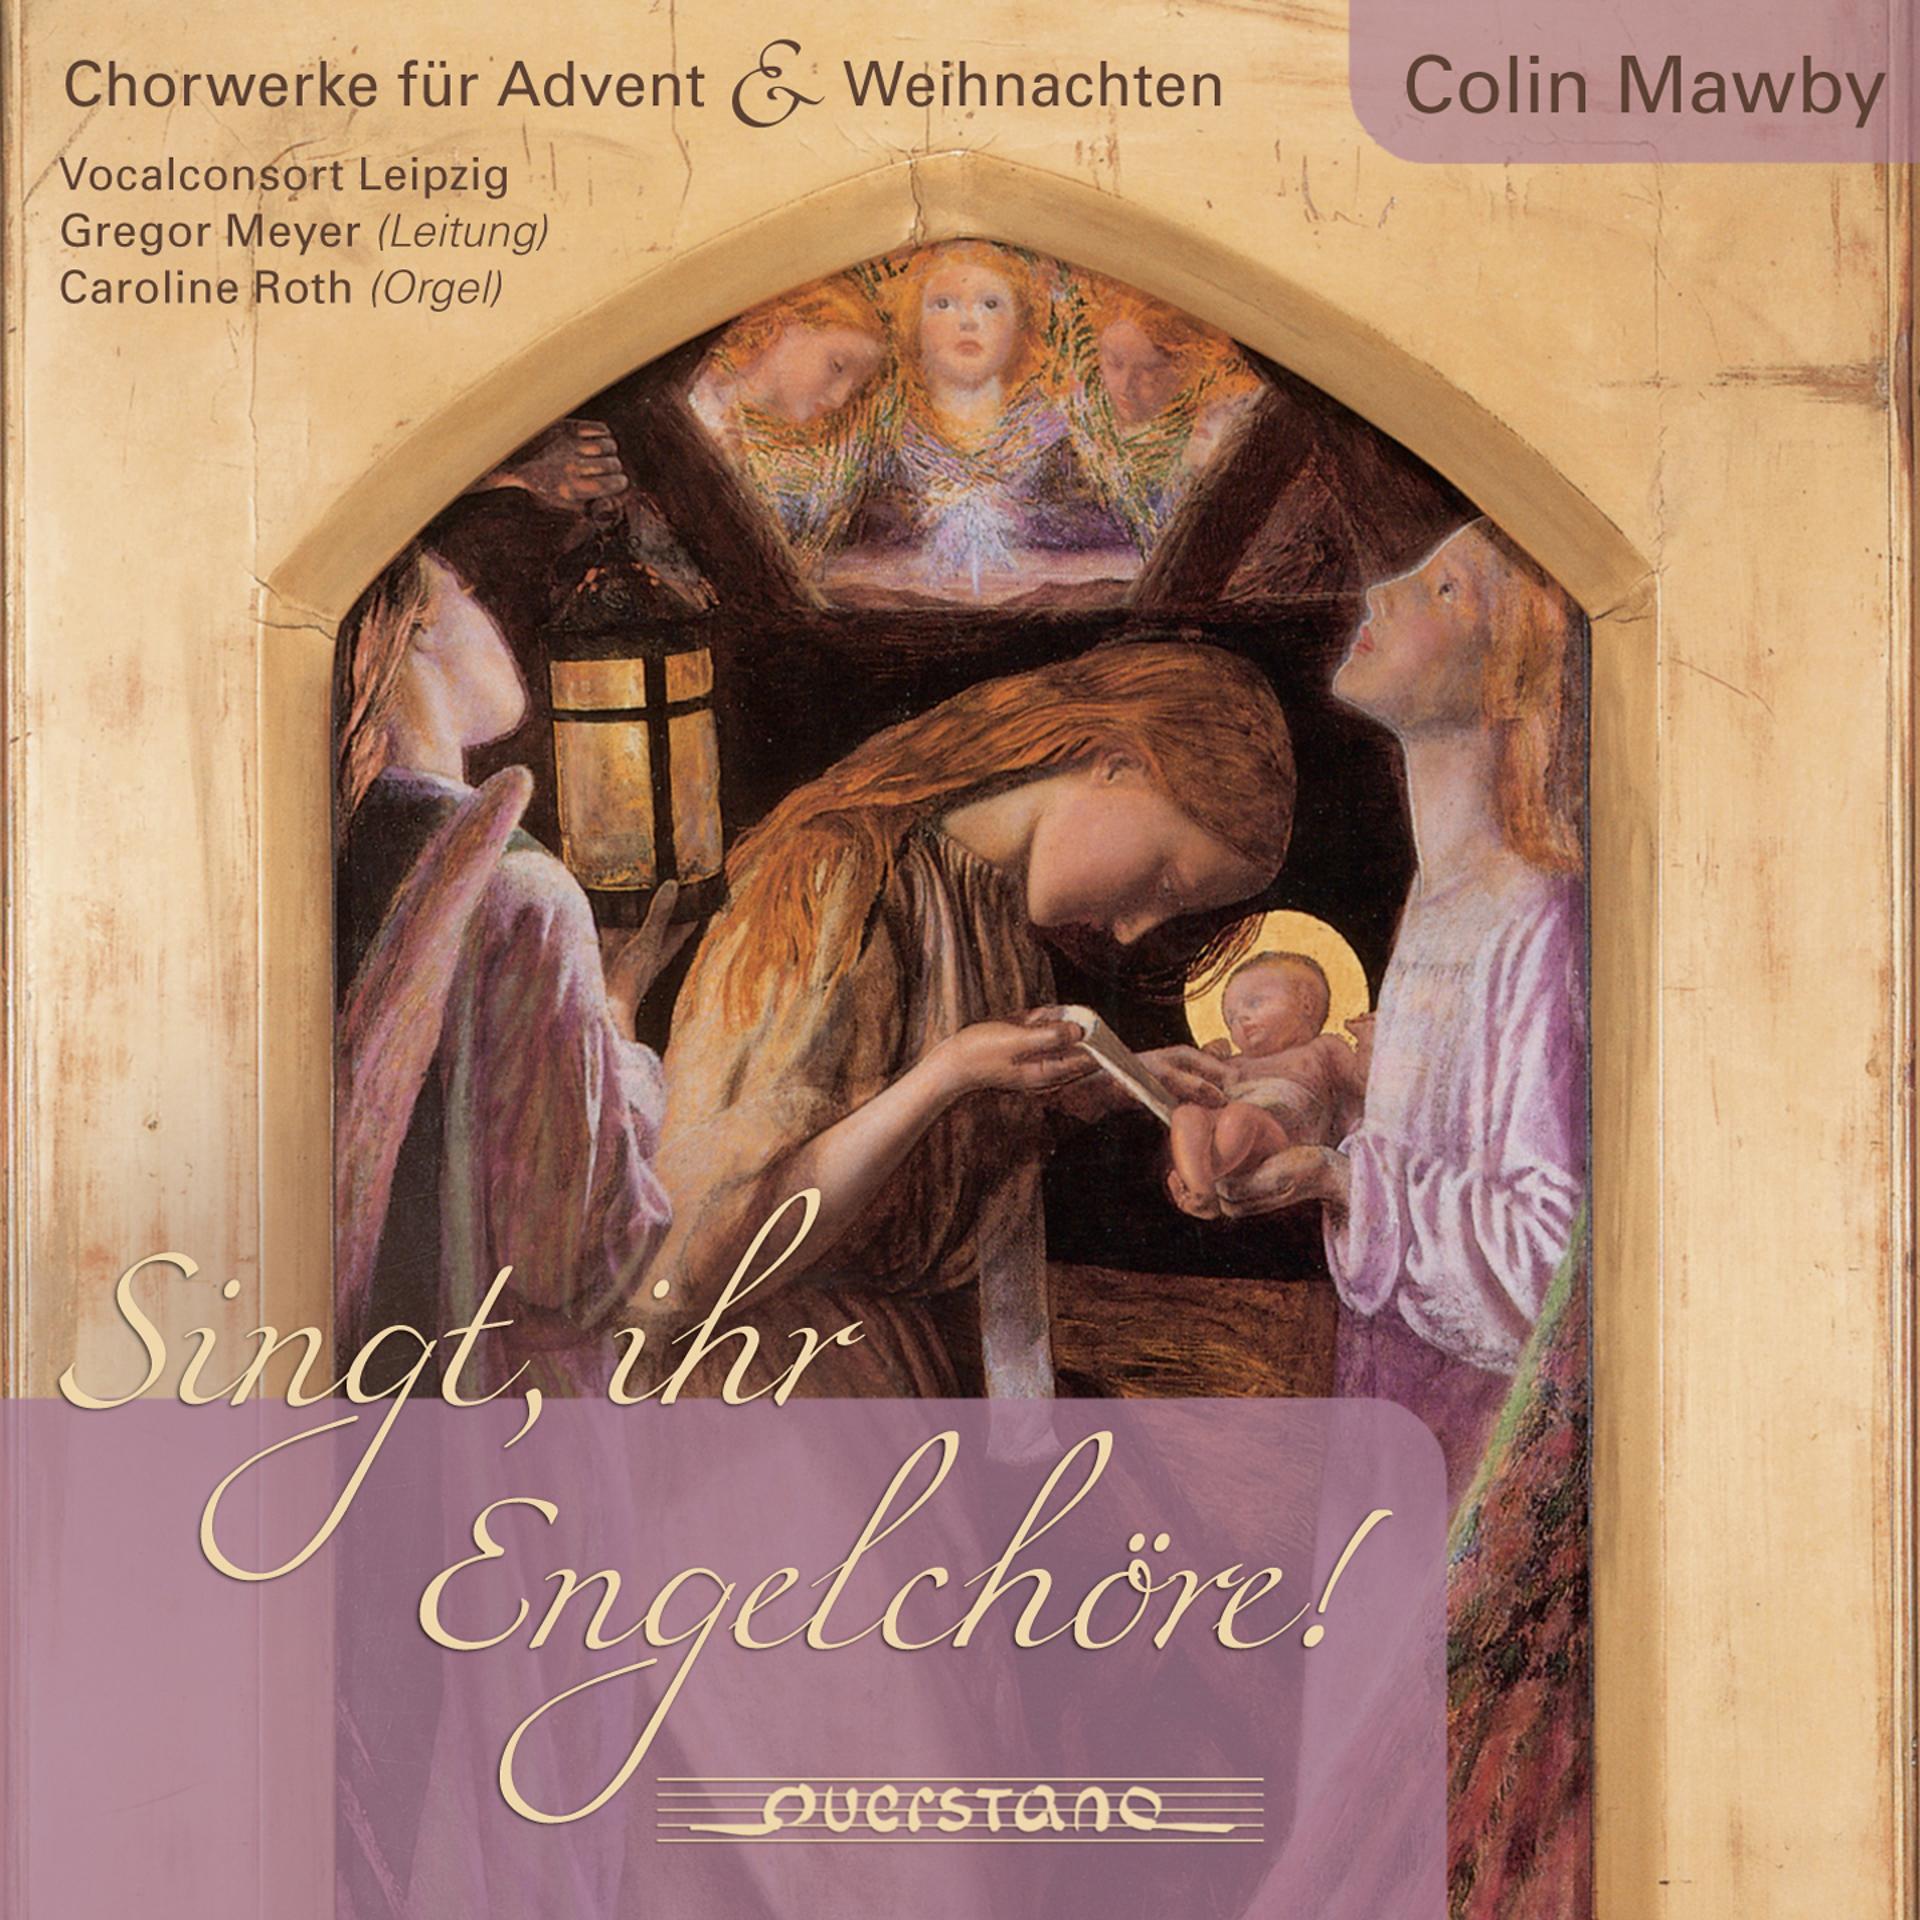 Постер альбома Colin Mawby: Singt, ihr Engelchöre